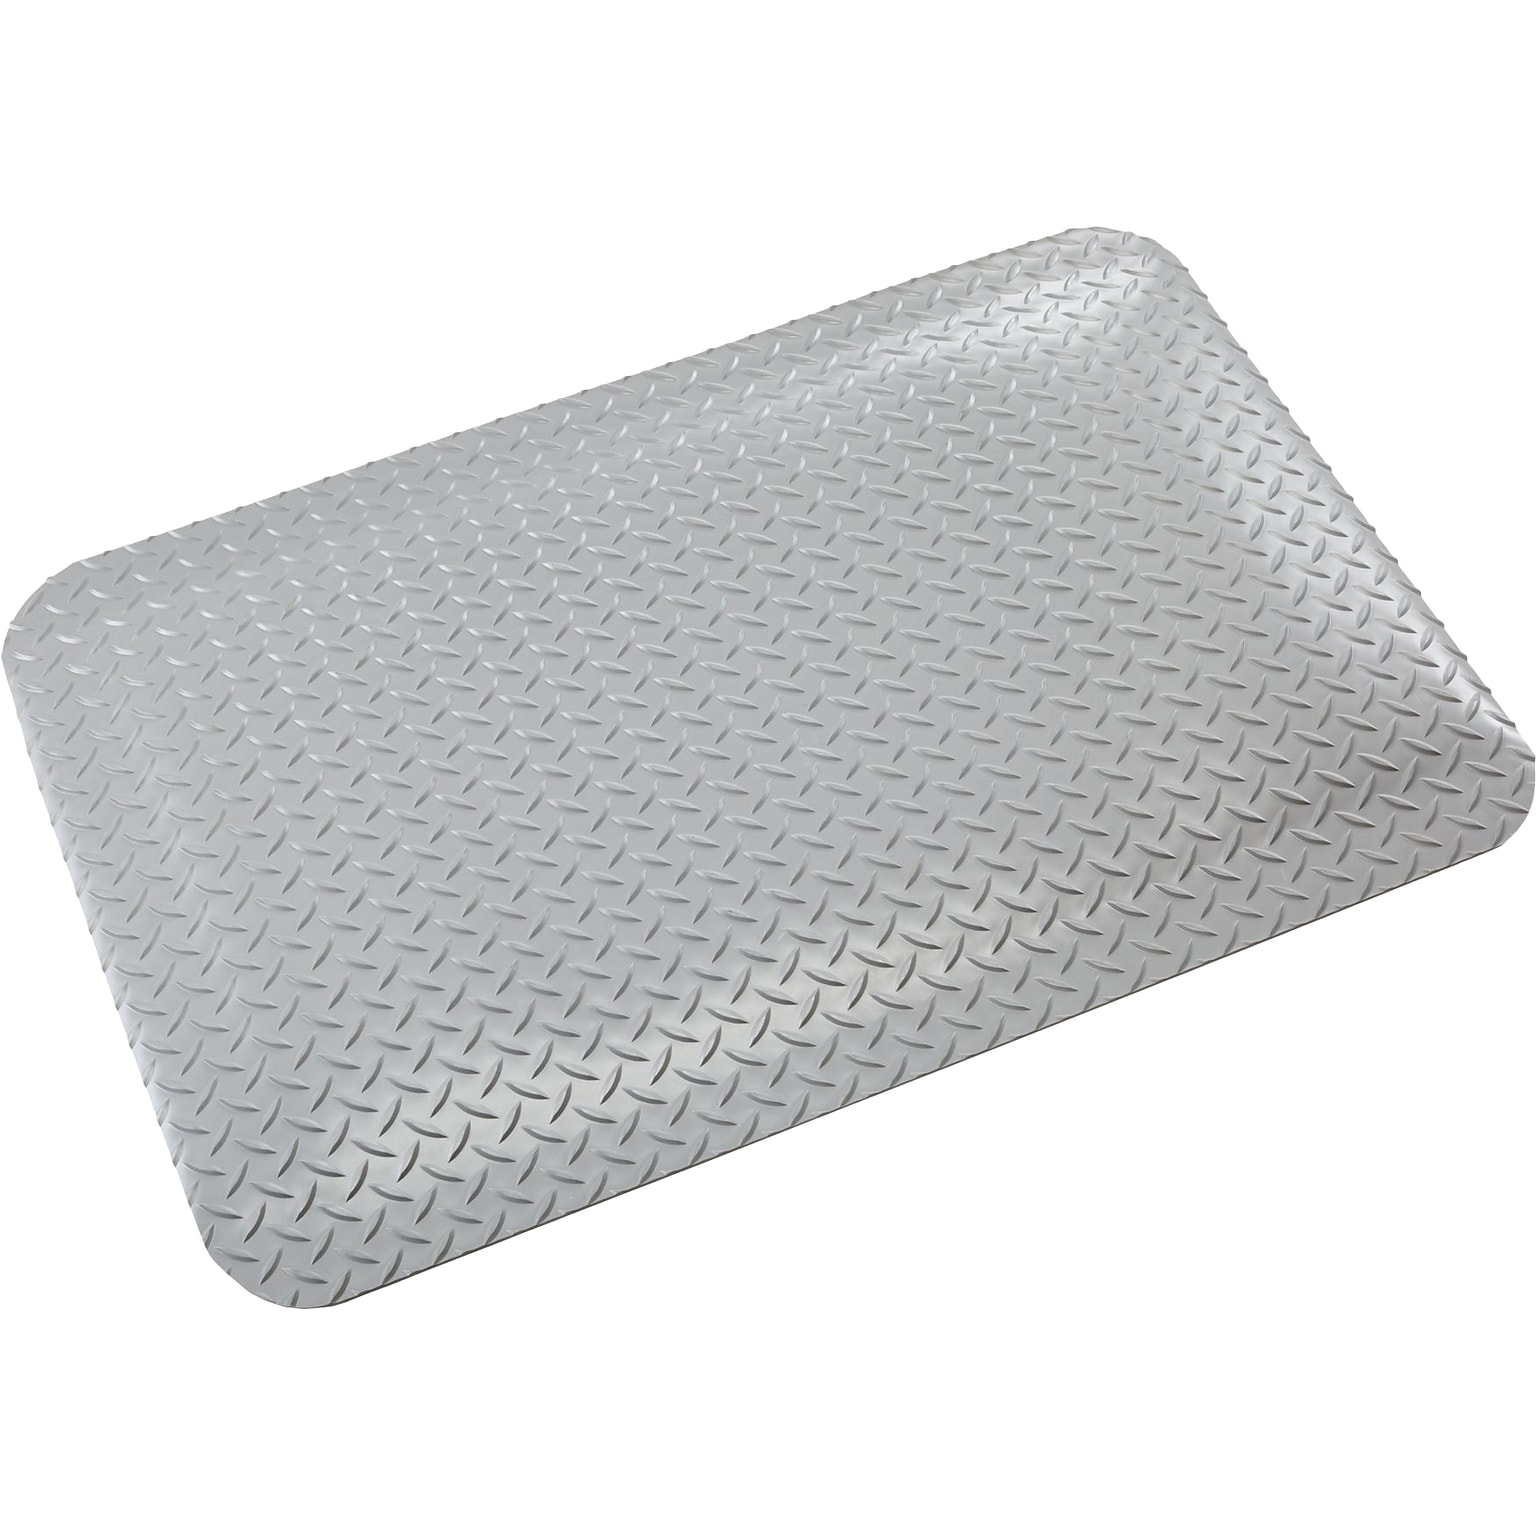 Crown Mats Industrial Deck Plate Anti-Fatigue Mat, 24 x 36, Gray (CD 0035DG)